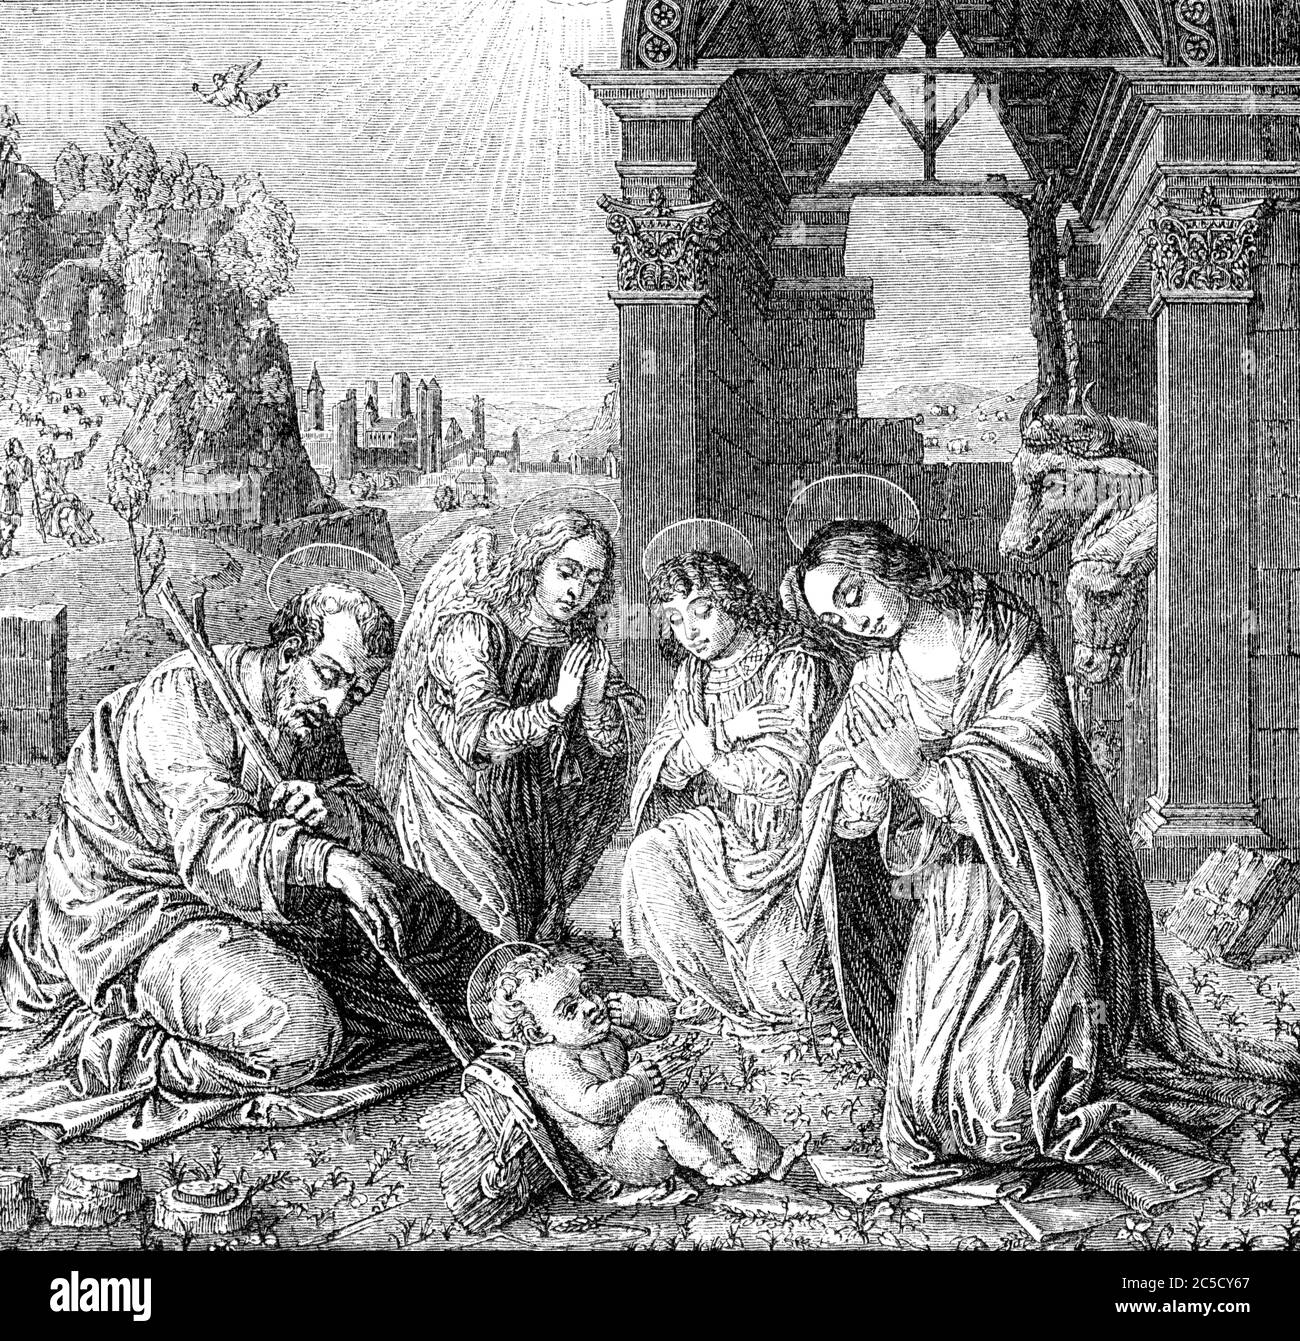 Un'immagine d'illustrazione vintage incisa della Natività di Gesù Cristo, da un libro della bibbia vittoriana datato 1883 che non è più in copyright Foto Stock